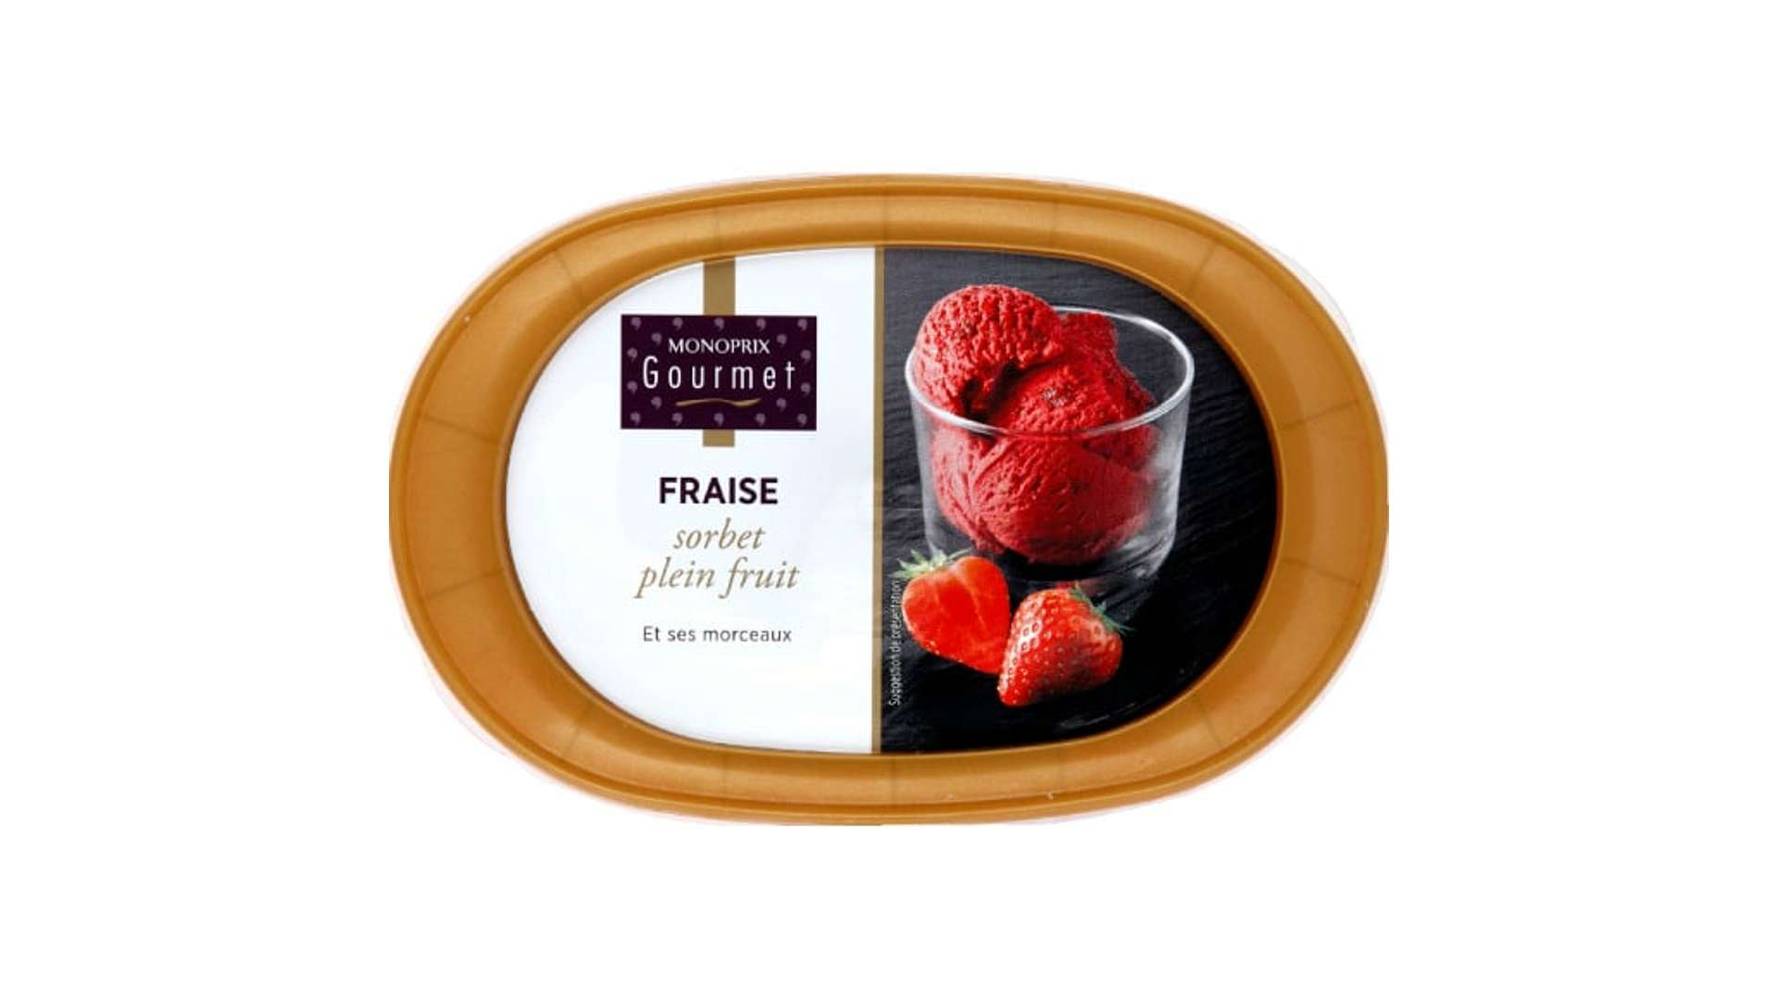 Monoprix Gourmet Sorbet plein fruit fraise et ses morceaux Le pot de 337g